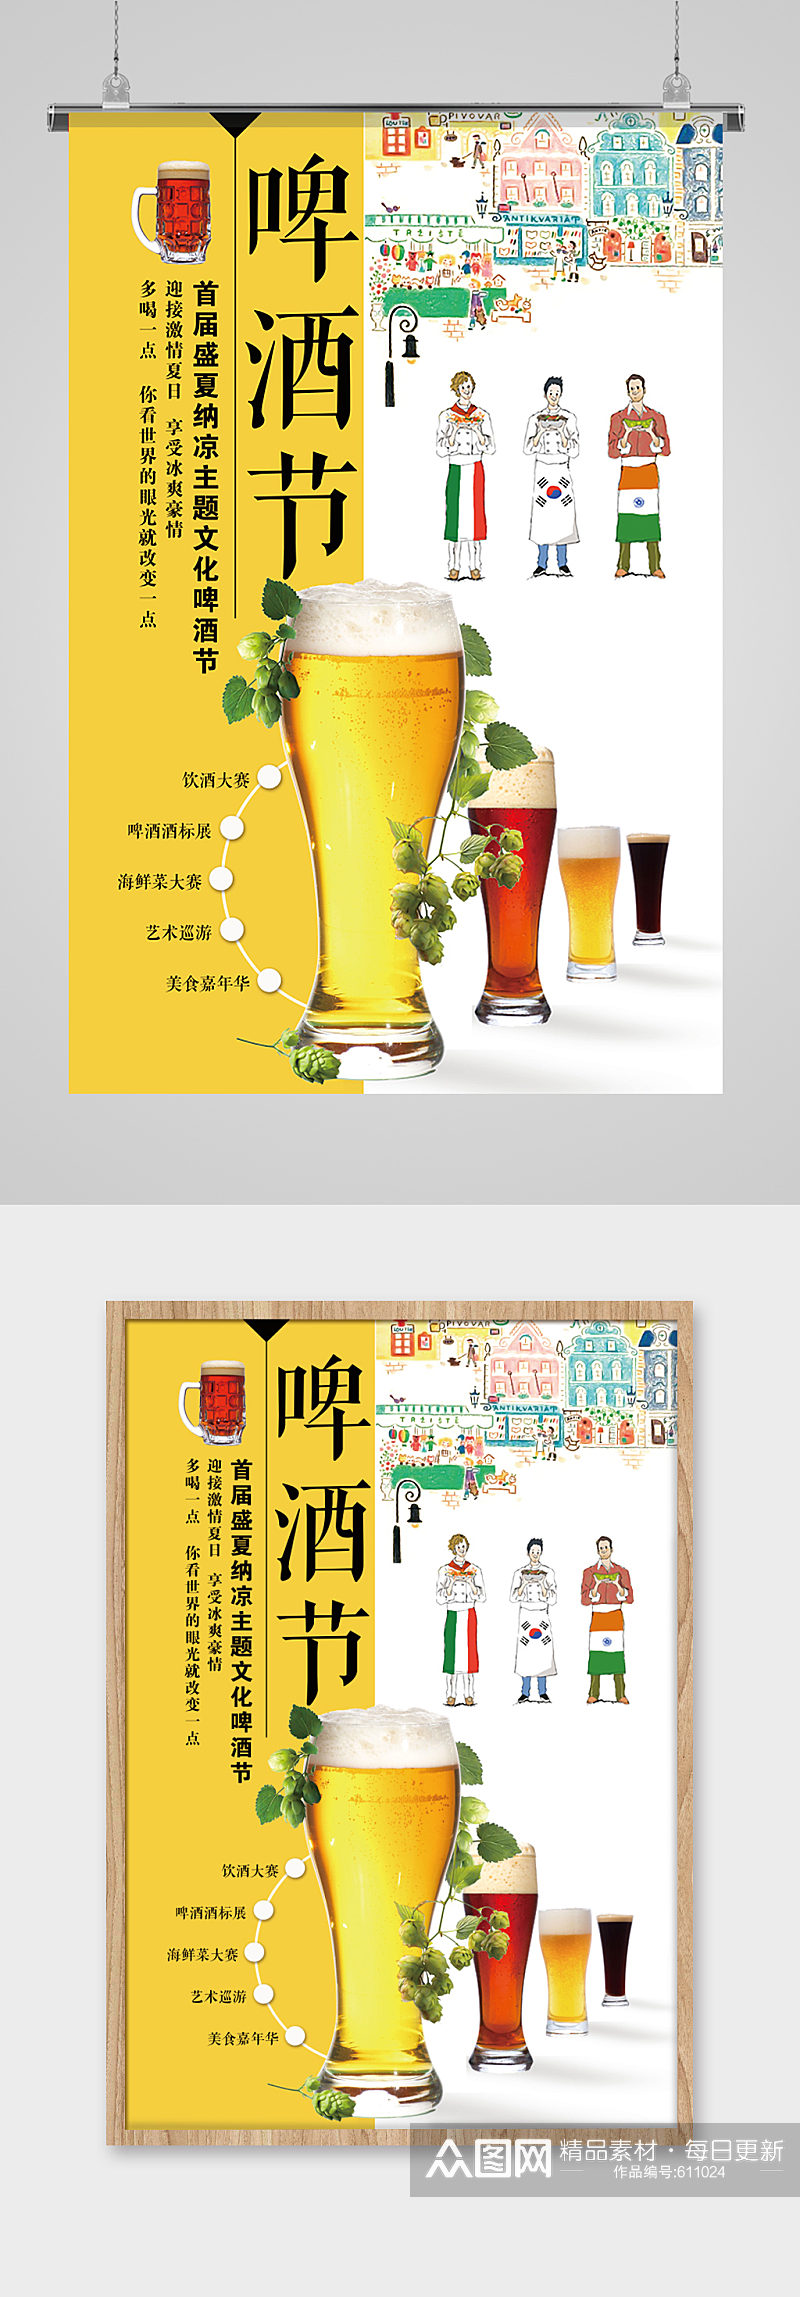 夏日主题文化啤酒节海报素材